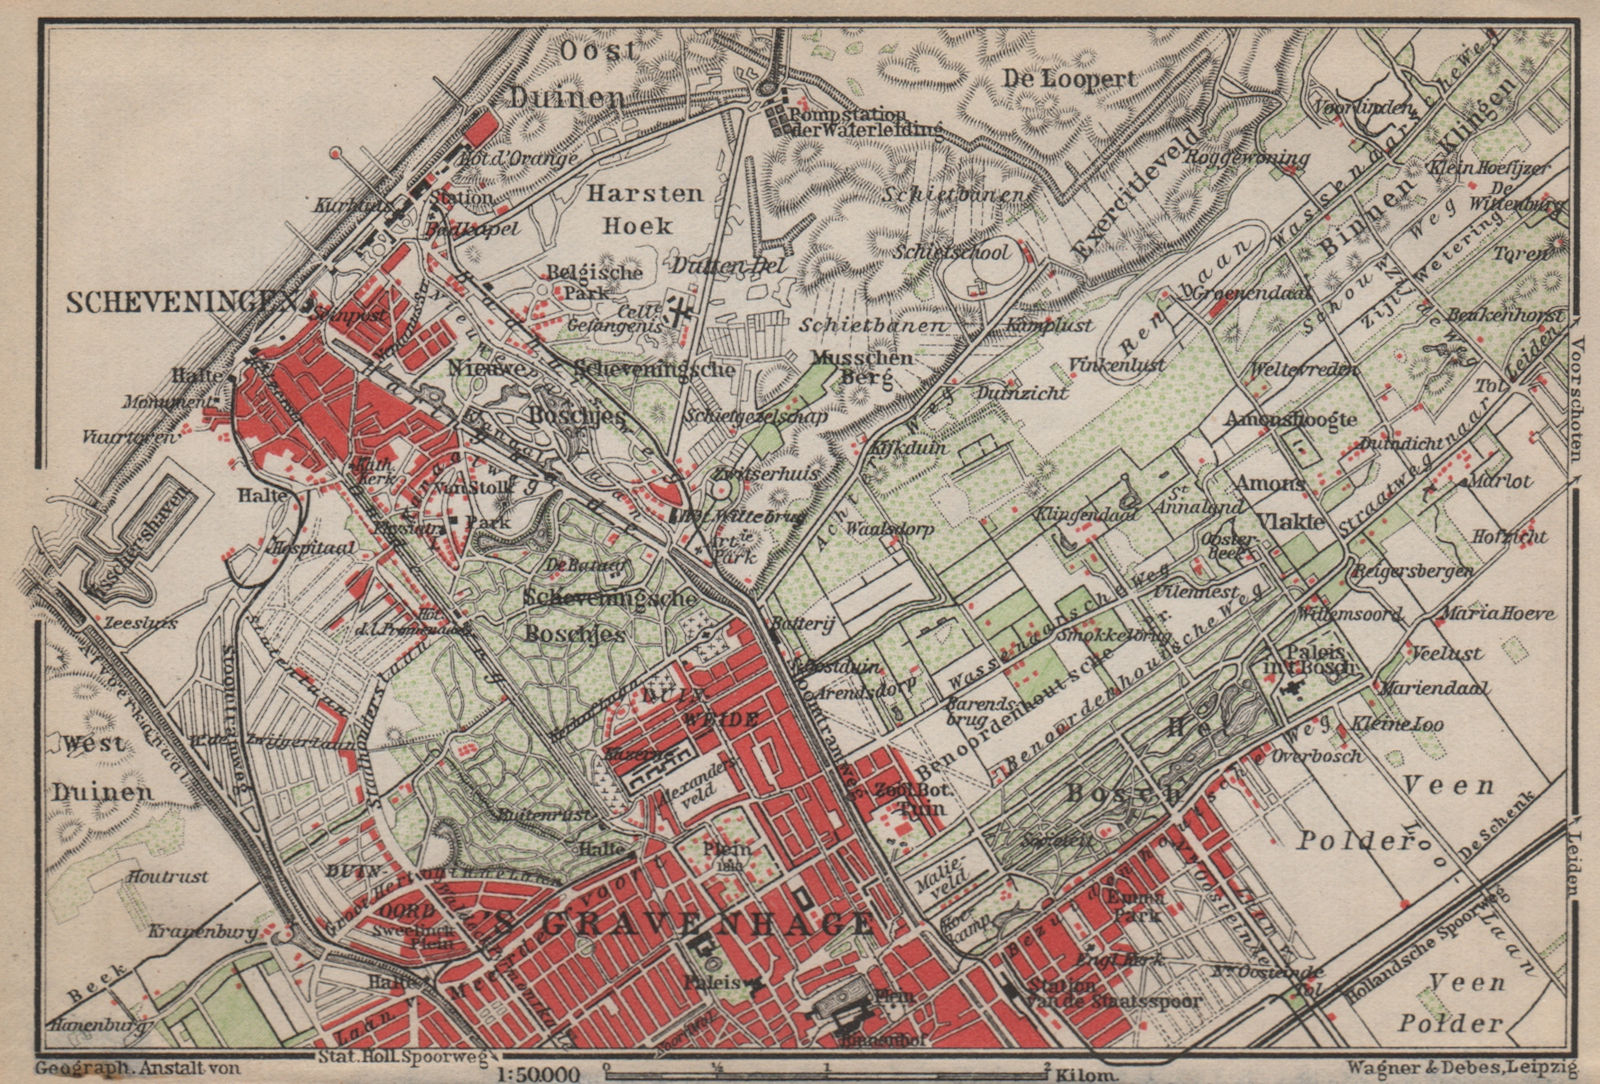 SCHEVENINGEN & THE HAGUE DEN HAAG 'S-GRAVENHAGE environs. Netherlands 1905 map